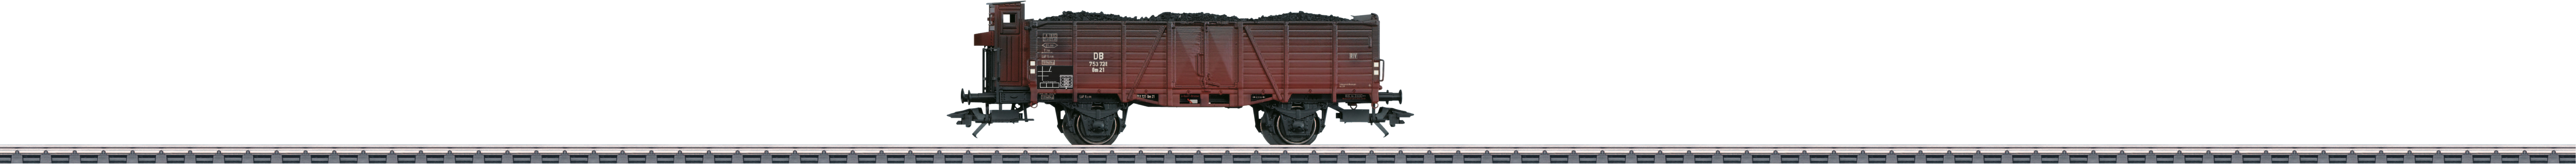 Märklin Güterwagen »Offener Hochbordwagen Om 21 - 46027«